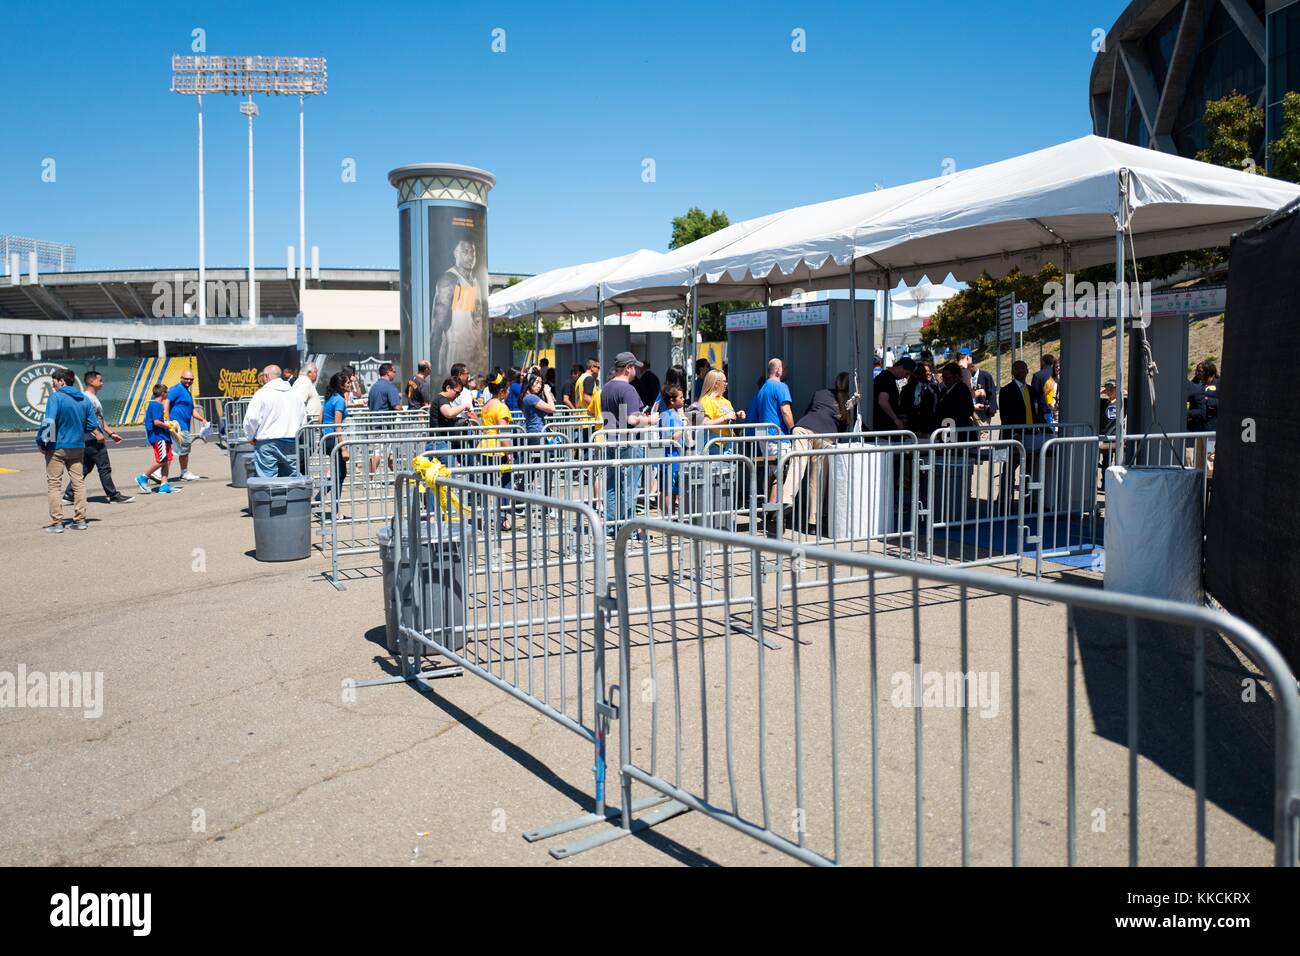 Avant la deuxième partie de la finale de la National Basketball Association (NBA) entre les Golden State Warriors et les Cleveland Cavaliers, les fans entrent dans des détecteurs de métal à l'extérieur de l'Oracle Arena à Oakland, Californie, le 5 juin 2016. Banque D'Images